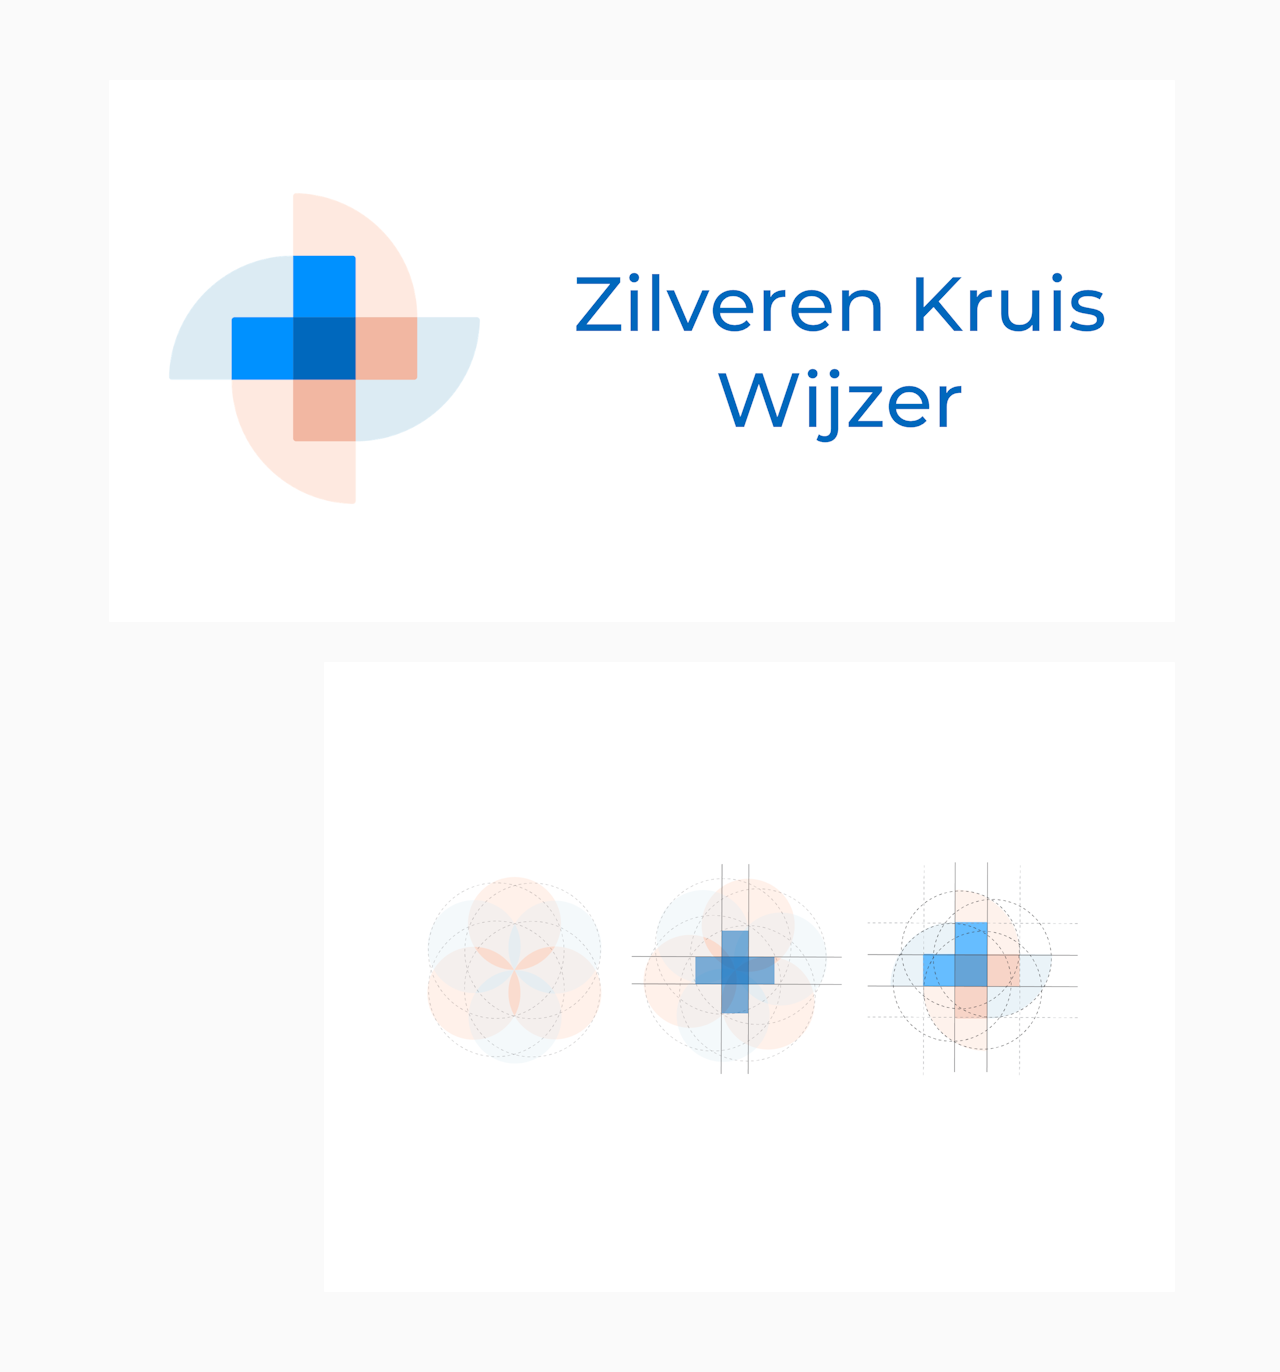 Illustratie logo en tekst Zilveren Kruis Wijzer.